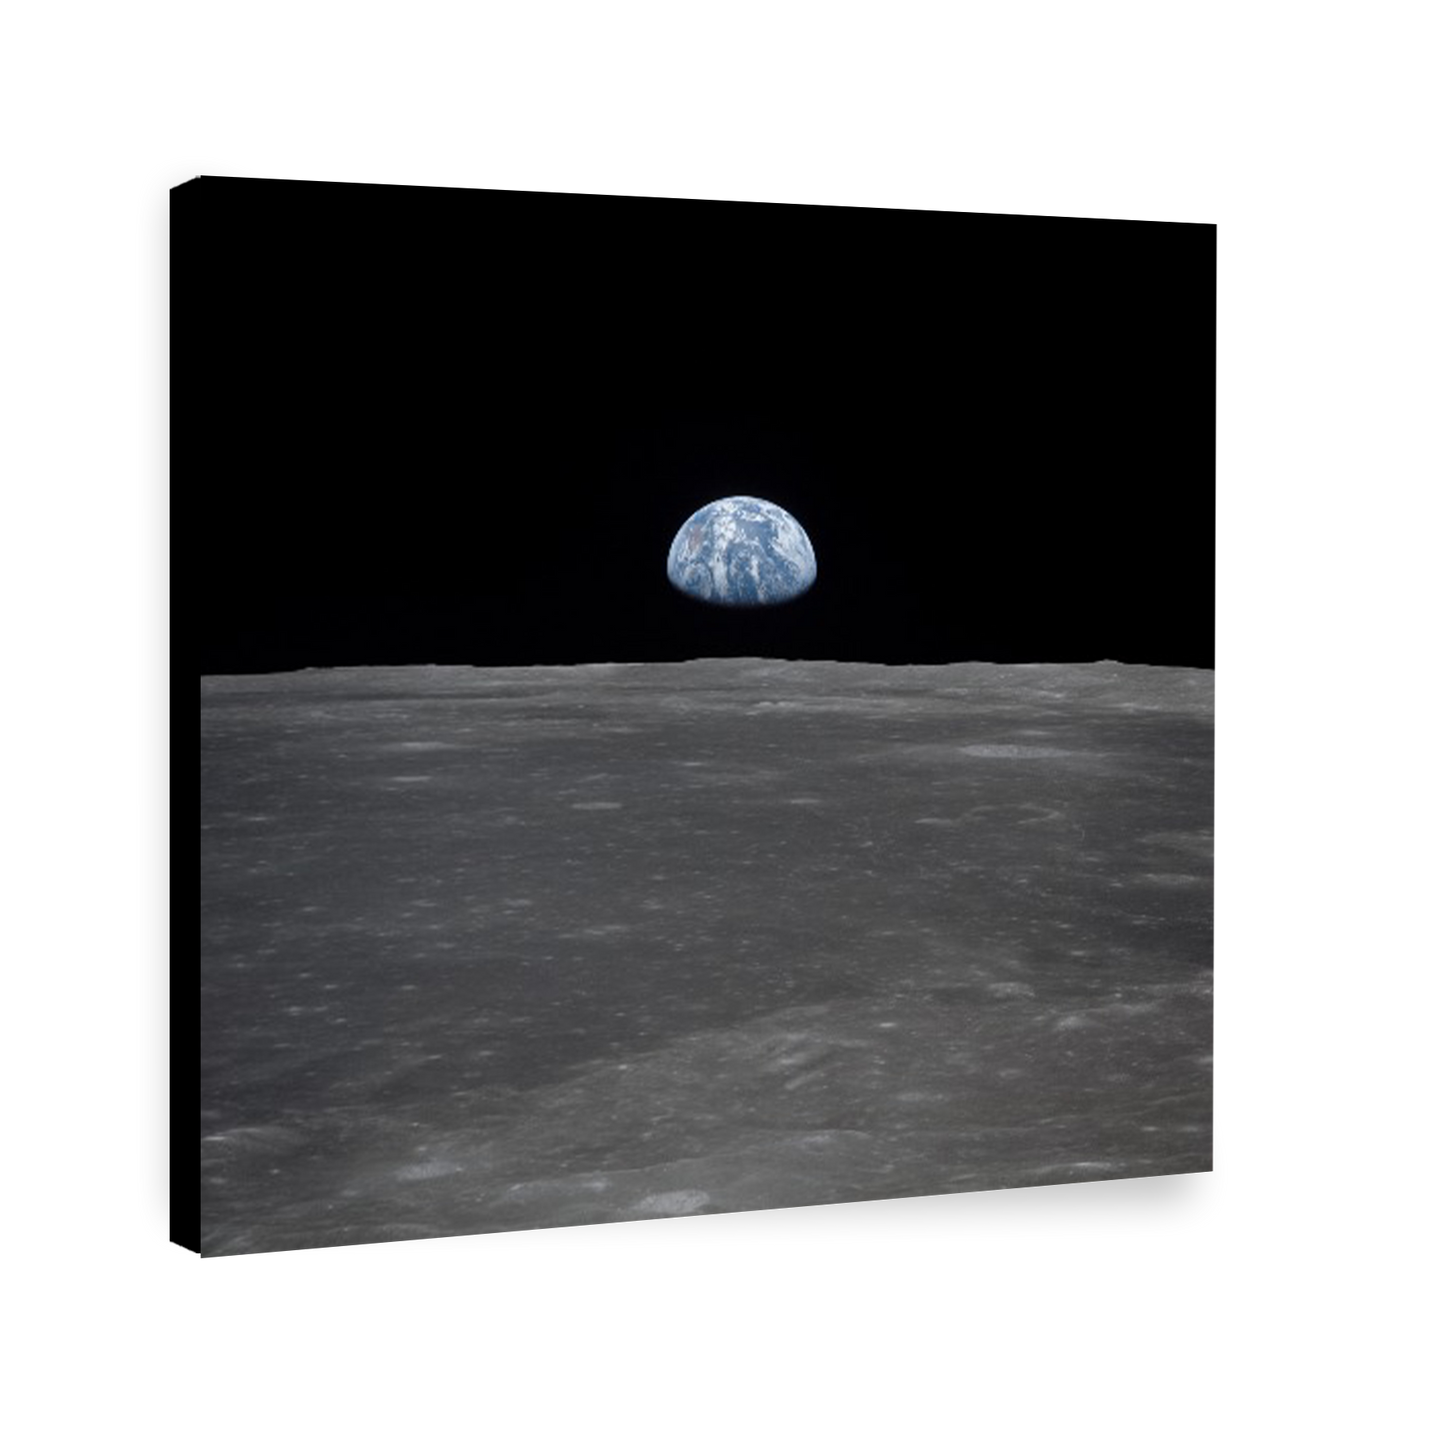 Espacio tierra desde la luna 145